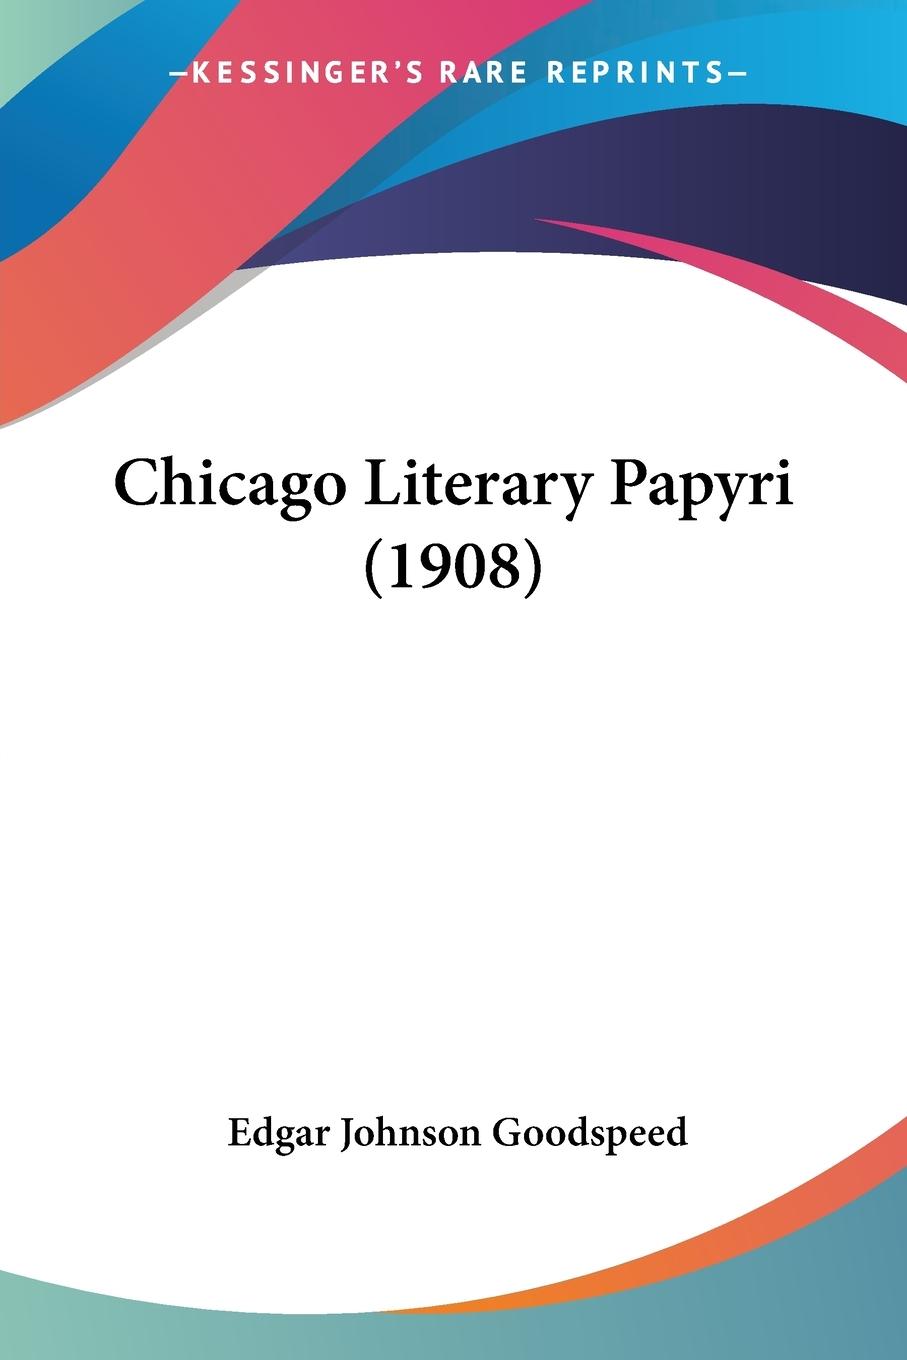 Chicago Literary Papyri (1908) - Goodspeed, Edgar Johnson